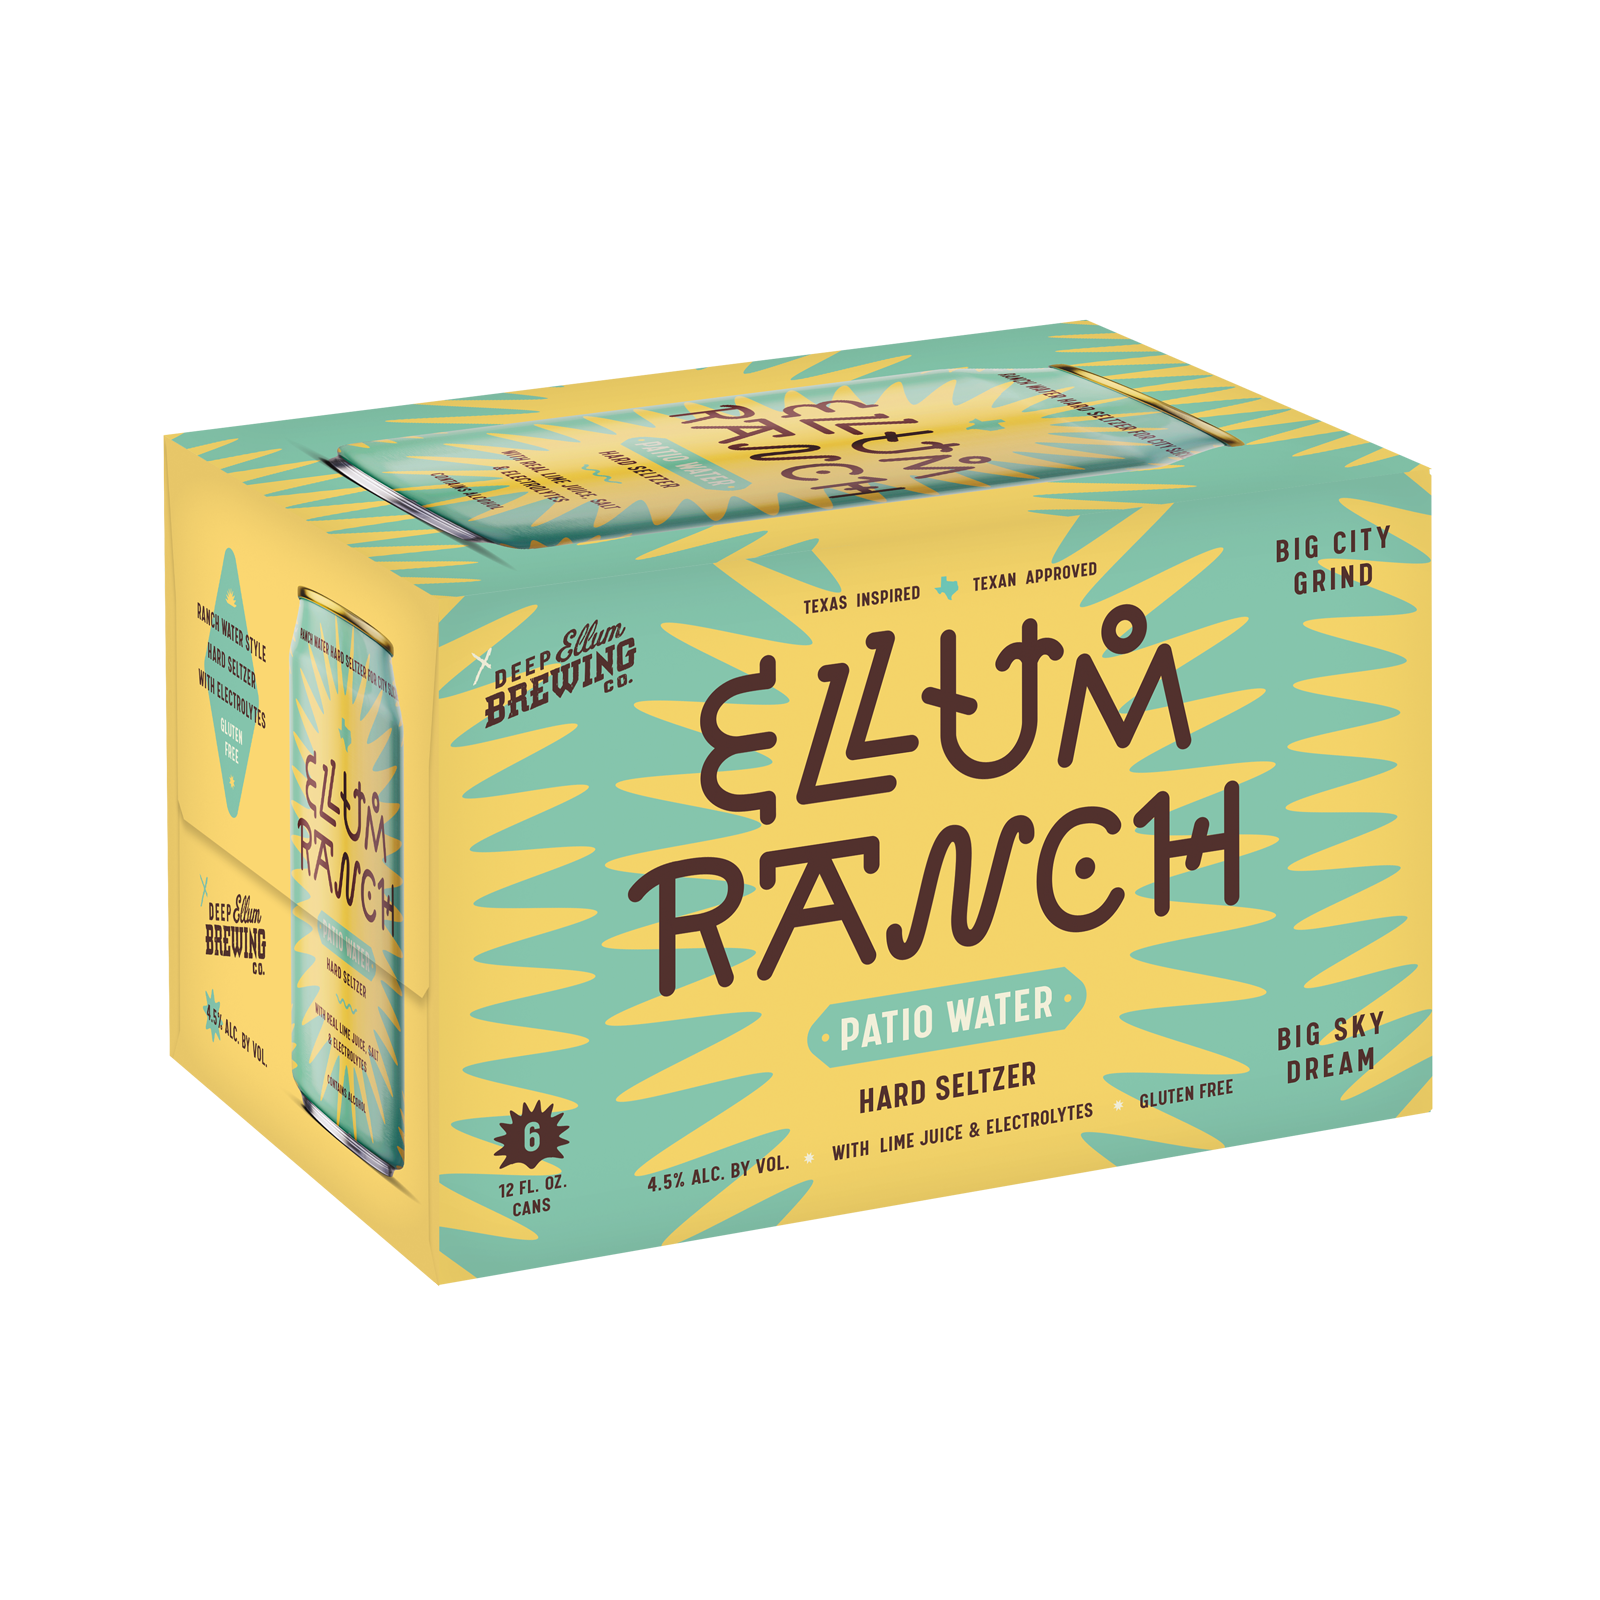 Ellum-Ranch-6pk-Carton-Mockup-v6-Clean